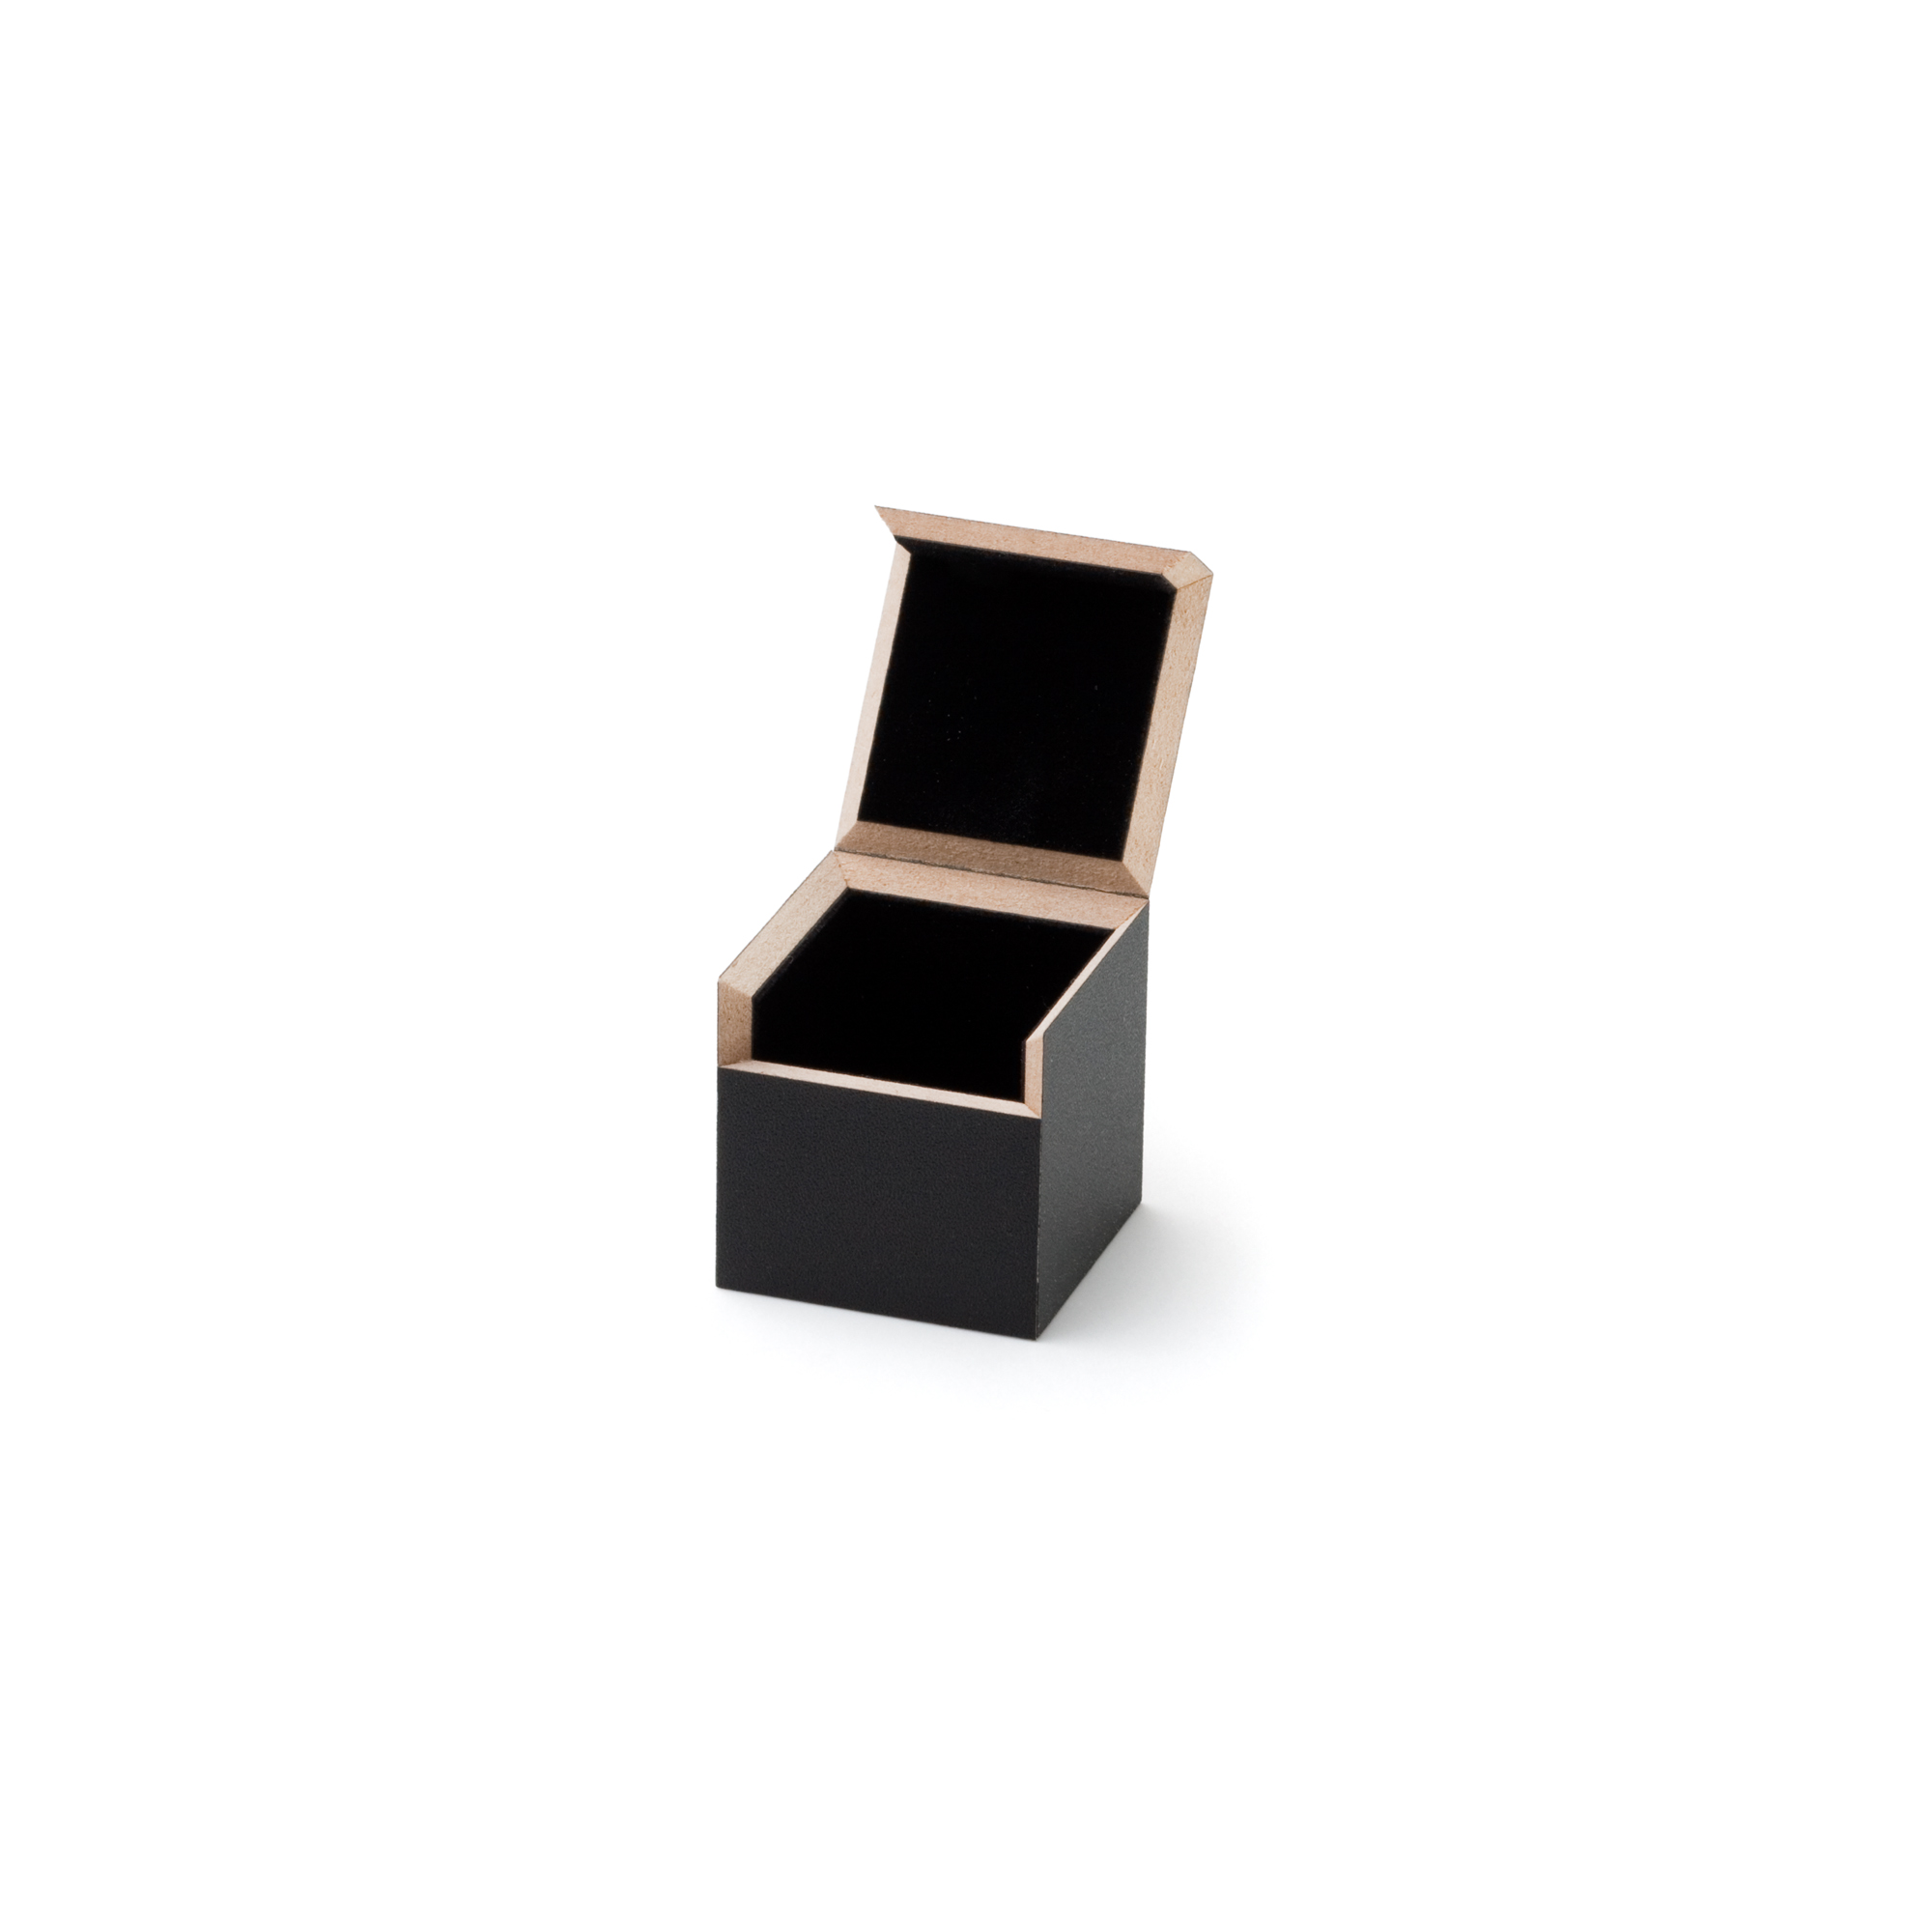 Blackbox Ring klein, 37 x 37 x 37 mm